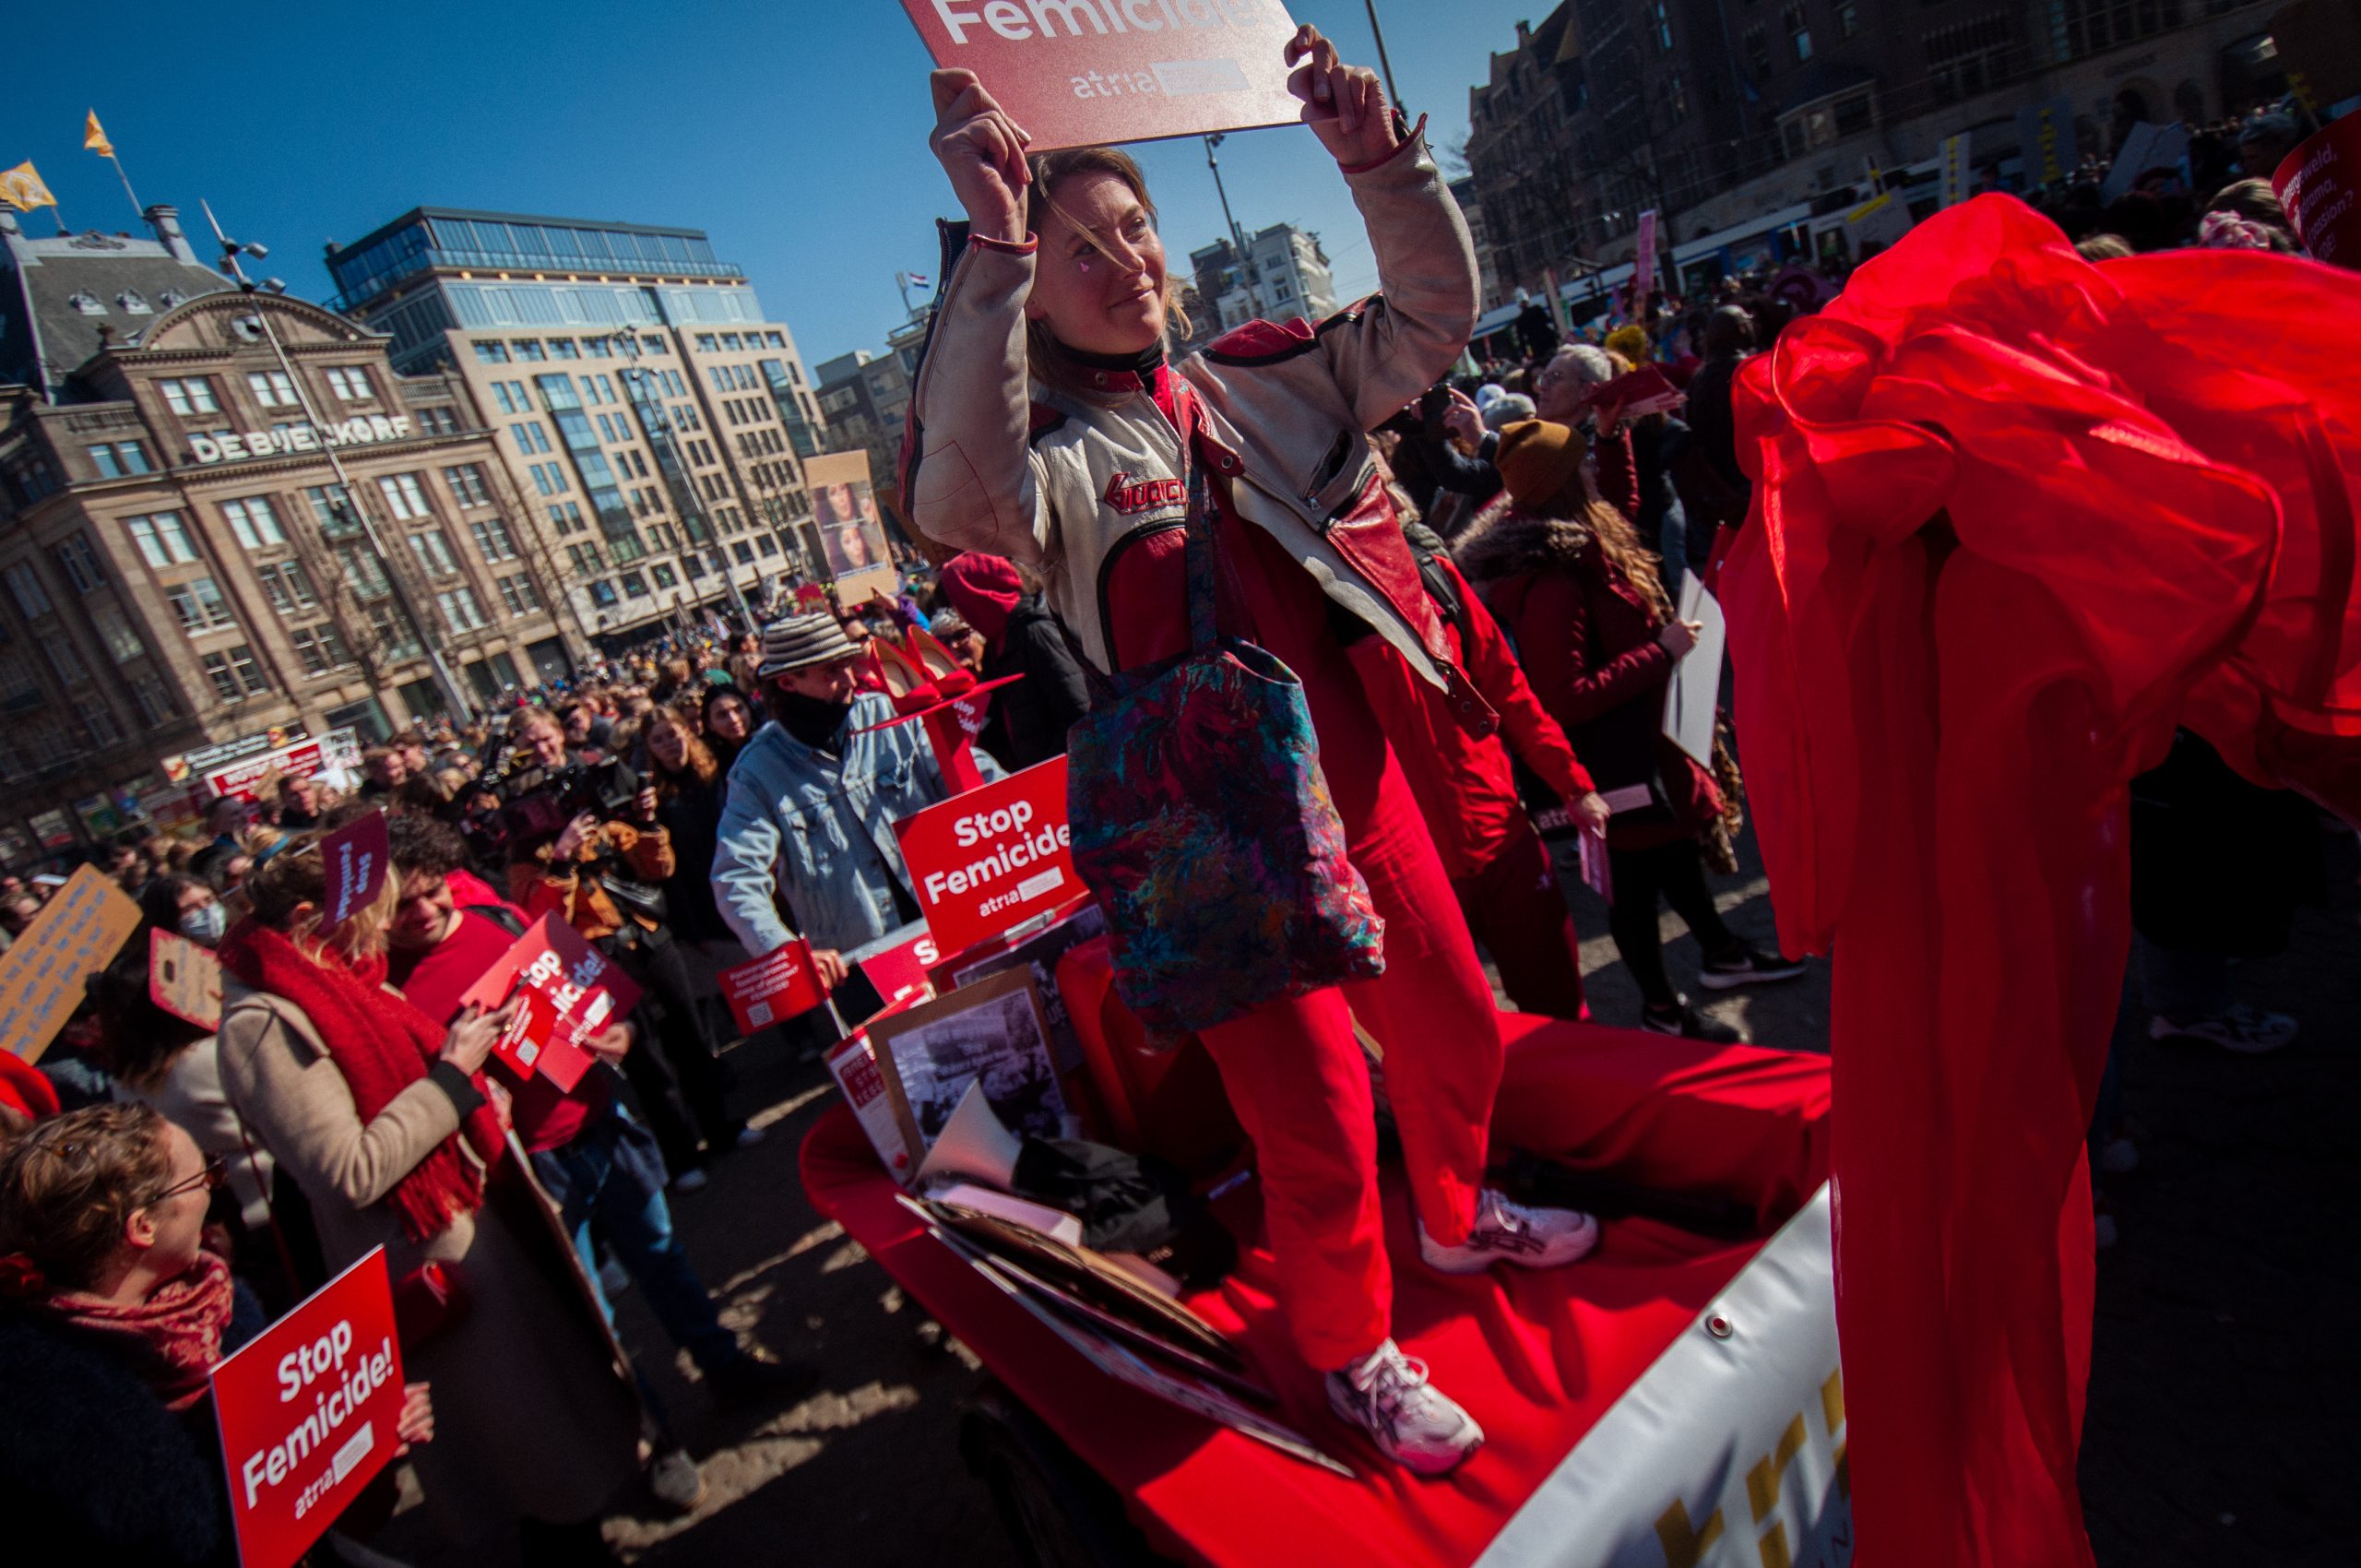 Stop Femicide blok Atria tijdens de Women's March van 2022